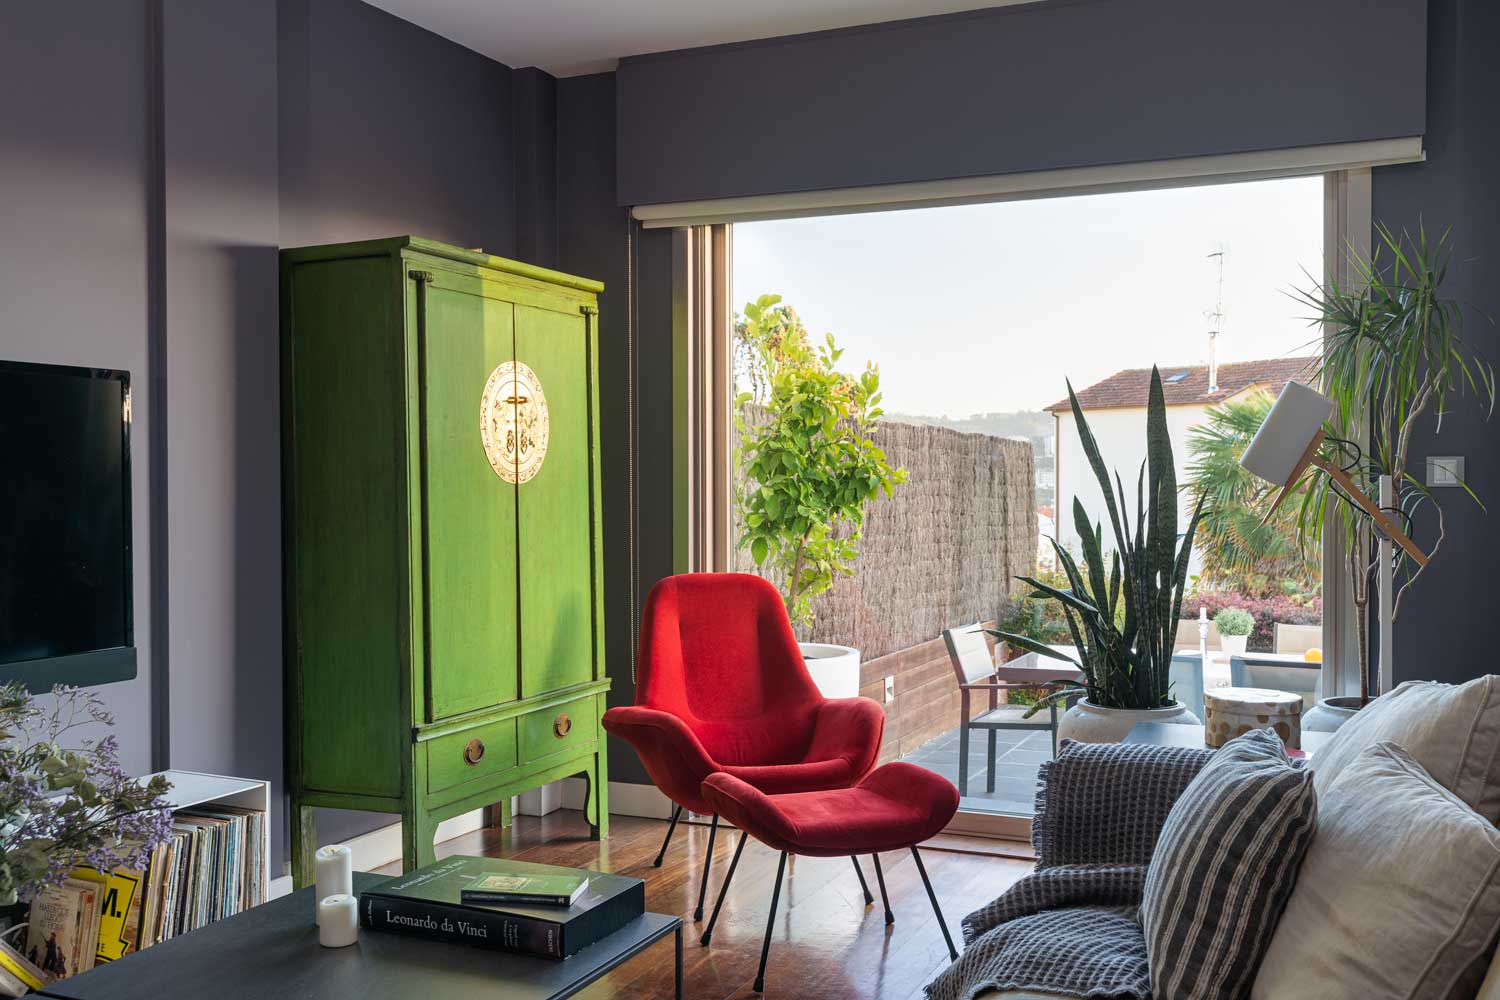 Detalle salón unifamiliar Oleiros_ sofá con textiles neutros y de rayas, butaca roja de lectura y armario de diseño verde junto a ventanal